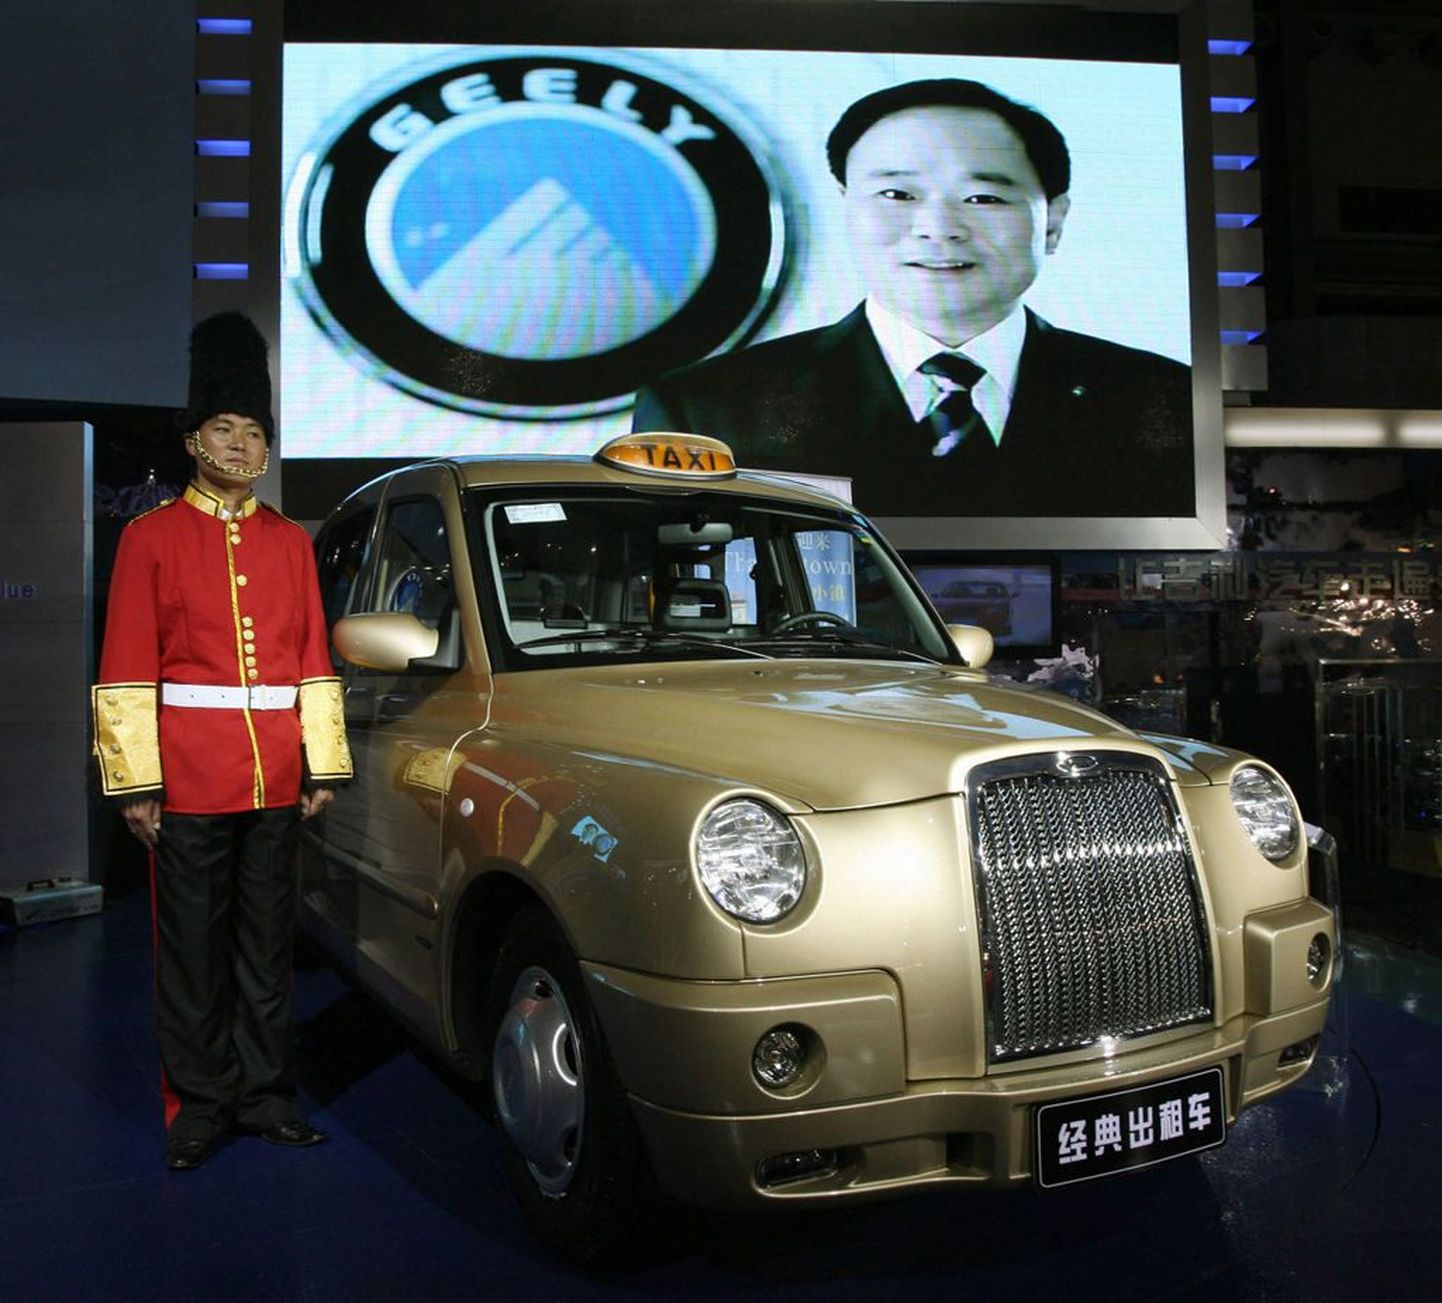 Hiina autotootja Geely poolt toodetav Londoni takso.